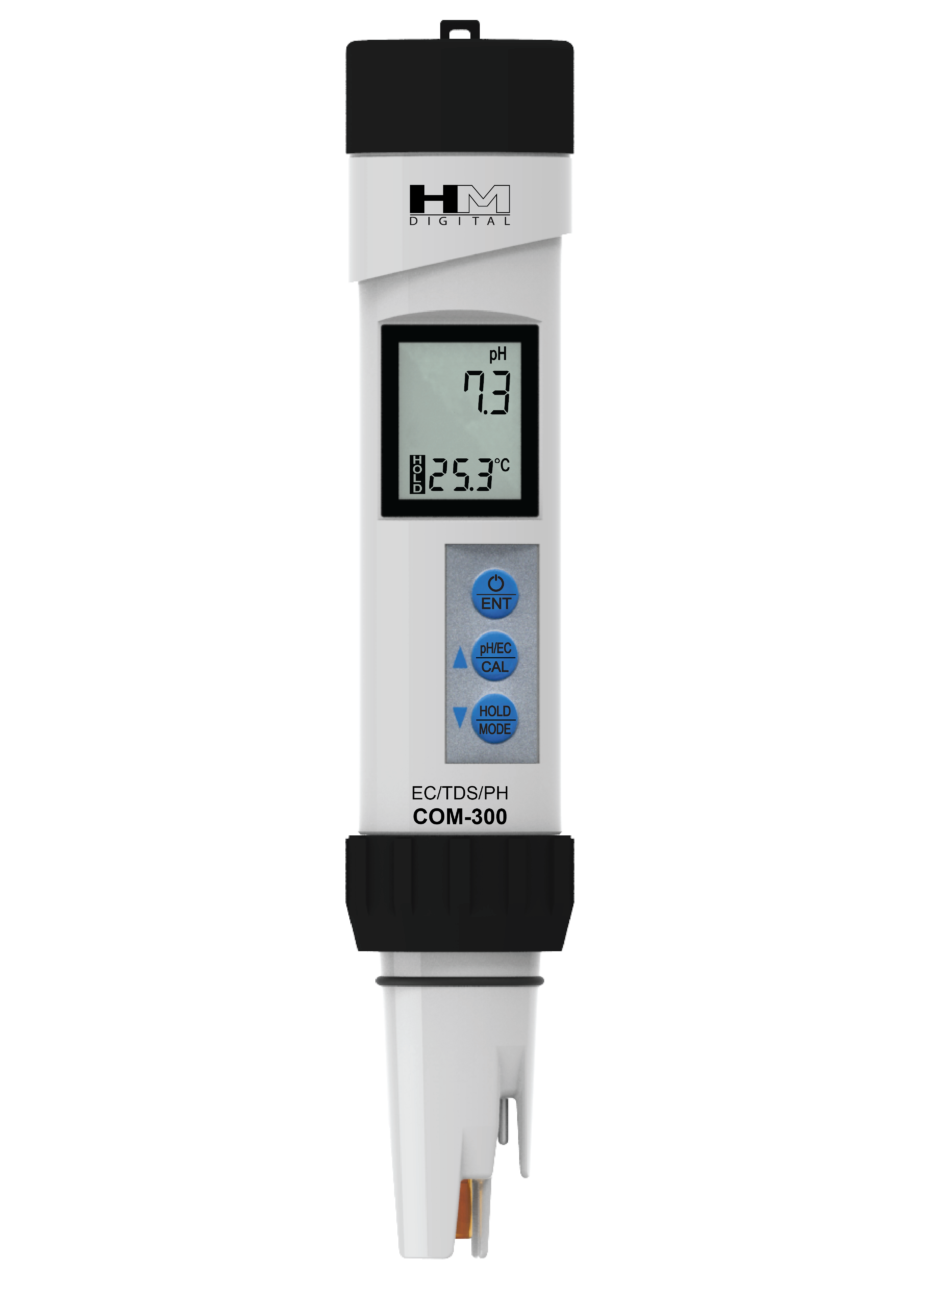 HM Digital COM-300 pH/EC/TDS/TMP Handheld Meter